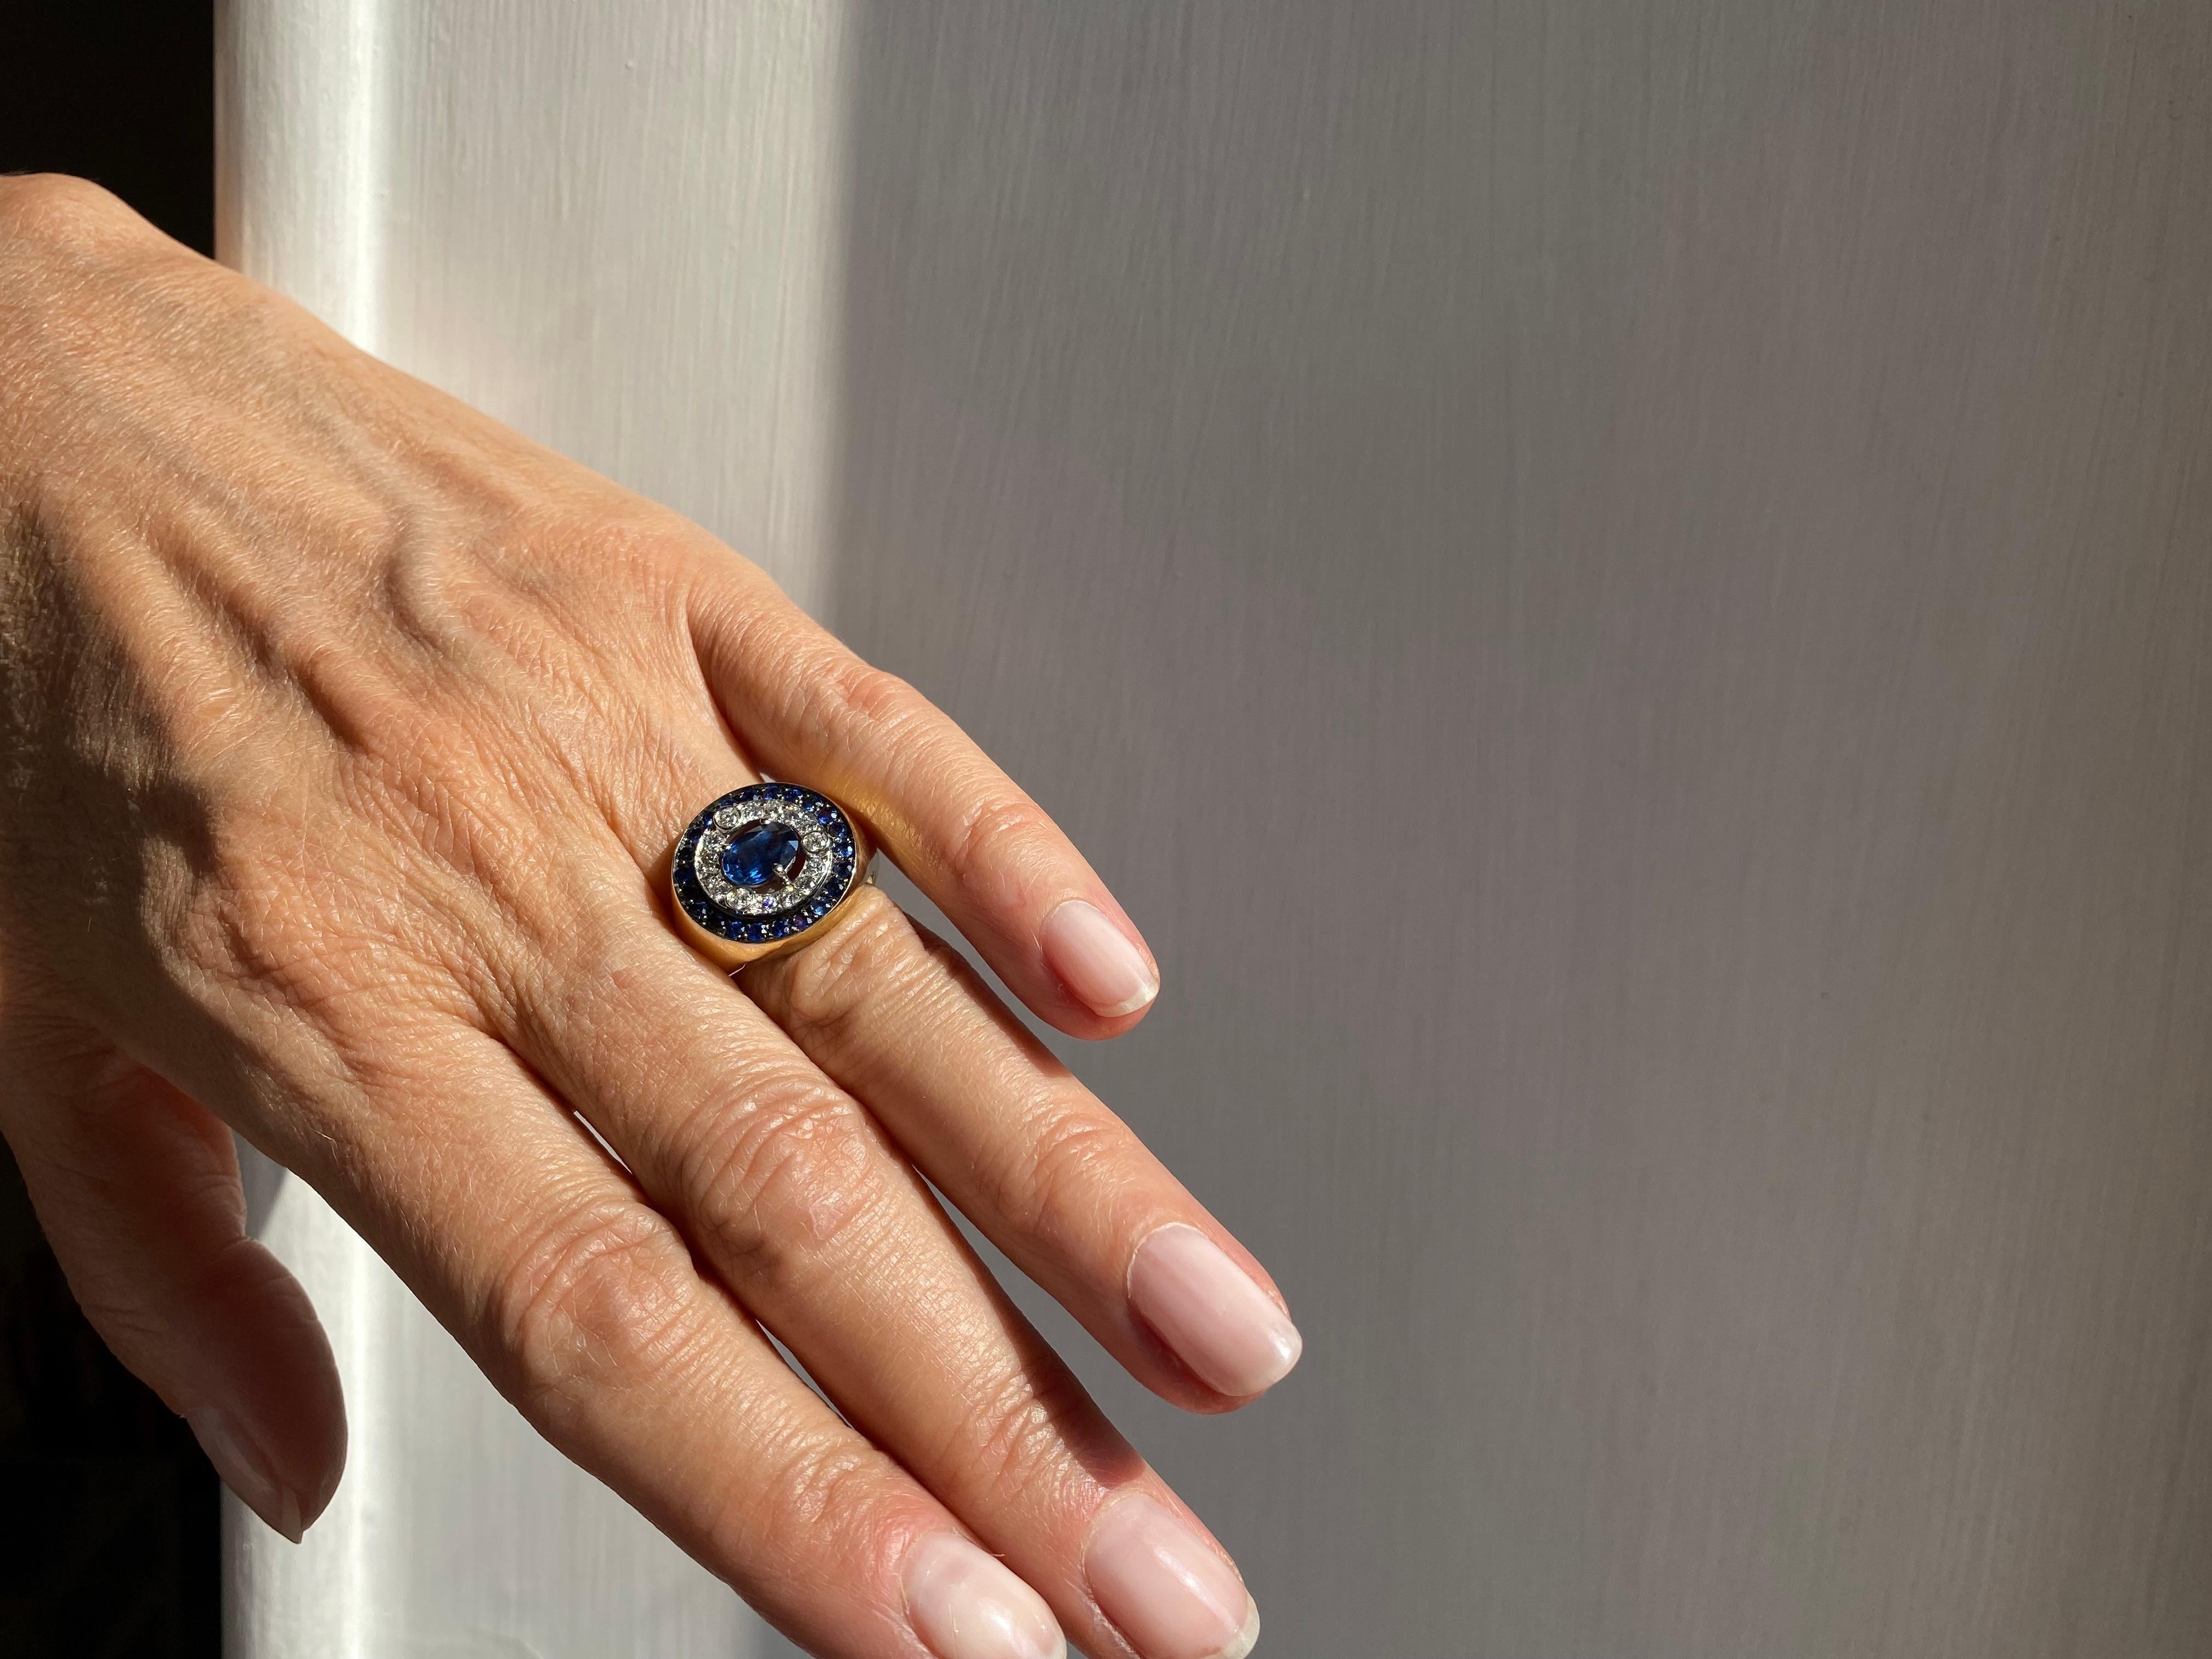 Rossella Ugolini Design Collectional 1.62 Karat Sapphires 0.33 White Diamonds 18 Karat Gold Modern Style Design Ring.  
Cette bague en or 18 carats présente un design unique et captivant inspiré par la beauté de la nébuleuse stellaire Helix. 
Le